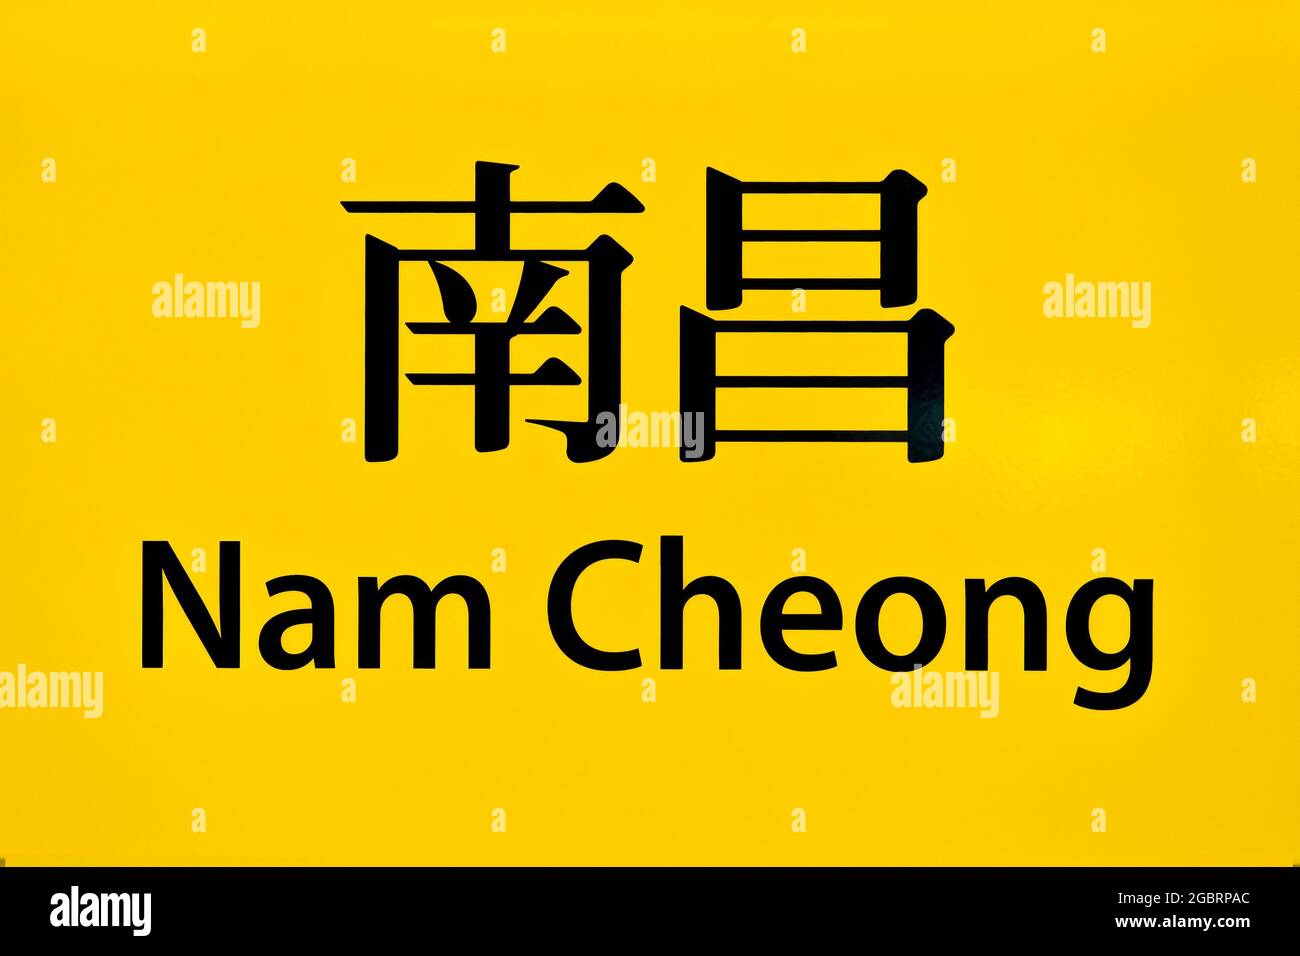 Le panneau bilingue de la gare MTR (Mass Transit Railway) de NamCheong sur la ligne Tung Chung, Kowloon, Hong Kong Banque D'Images